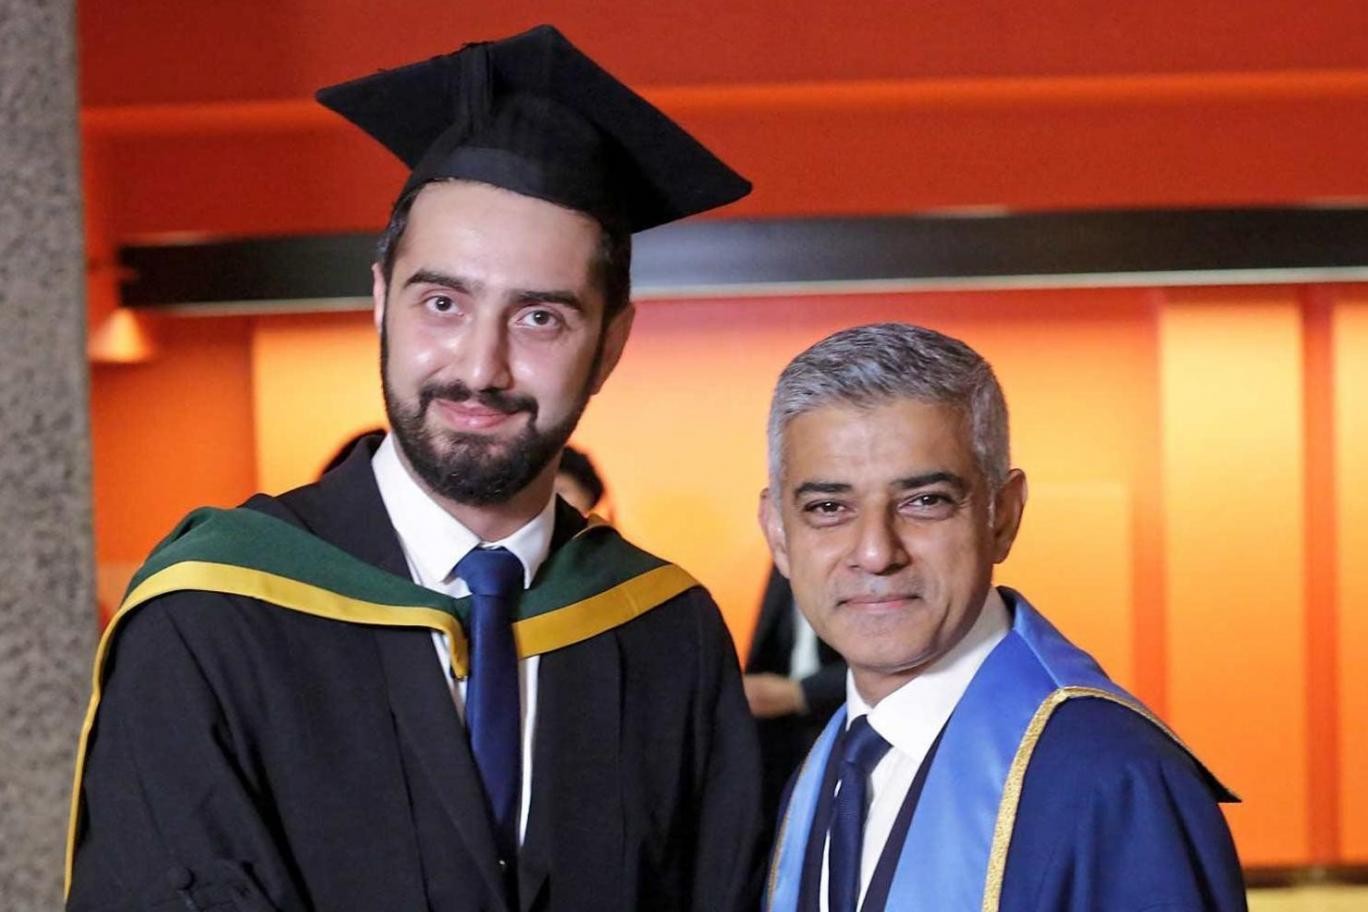 تخرج لاجئ سوري من كلية الطب في لندن بعد معاناة 10 سنوات والتنقل بين أربعة بلدان 